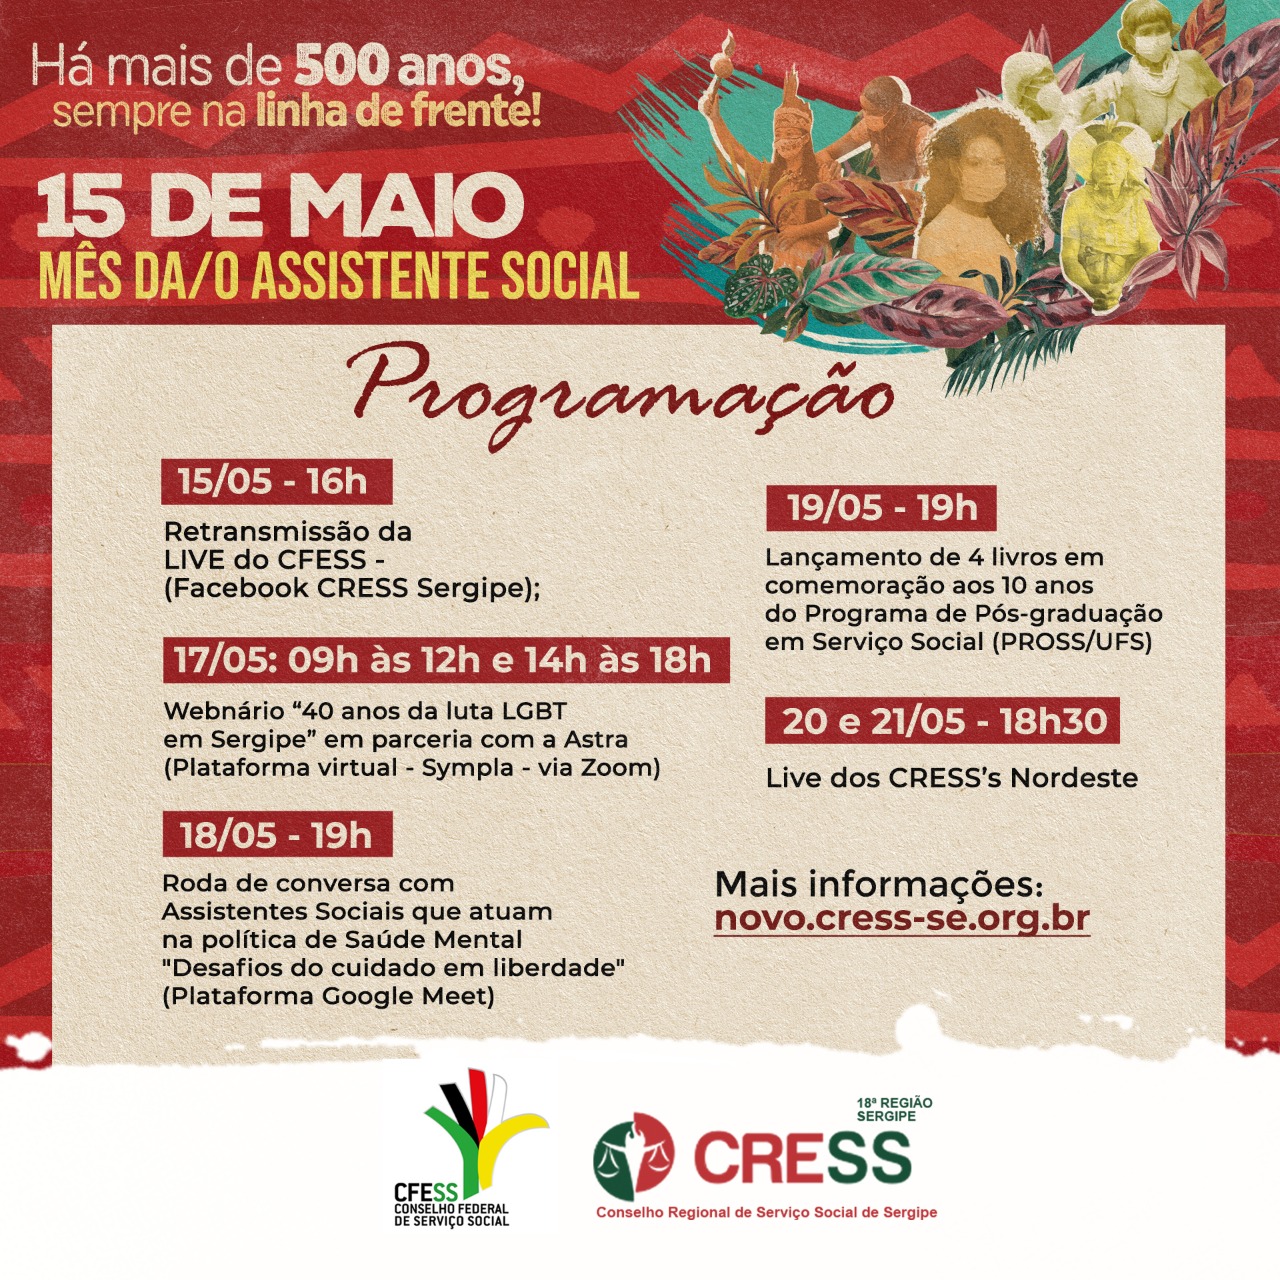 CRESS Sergipe divulga programação do Mês da/o Assistente Social